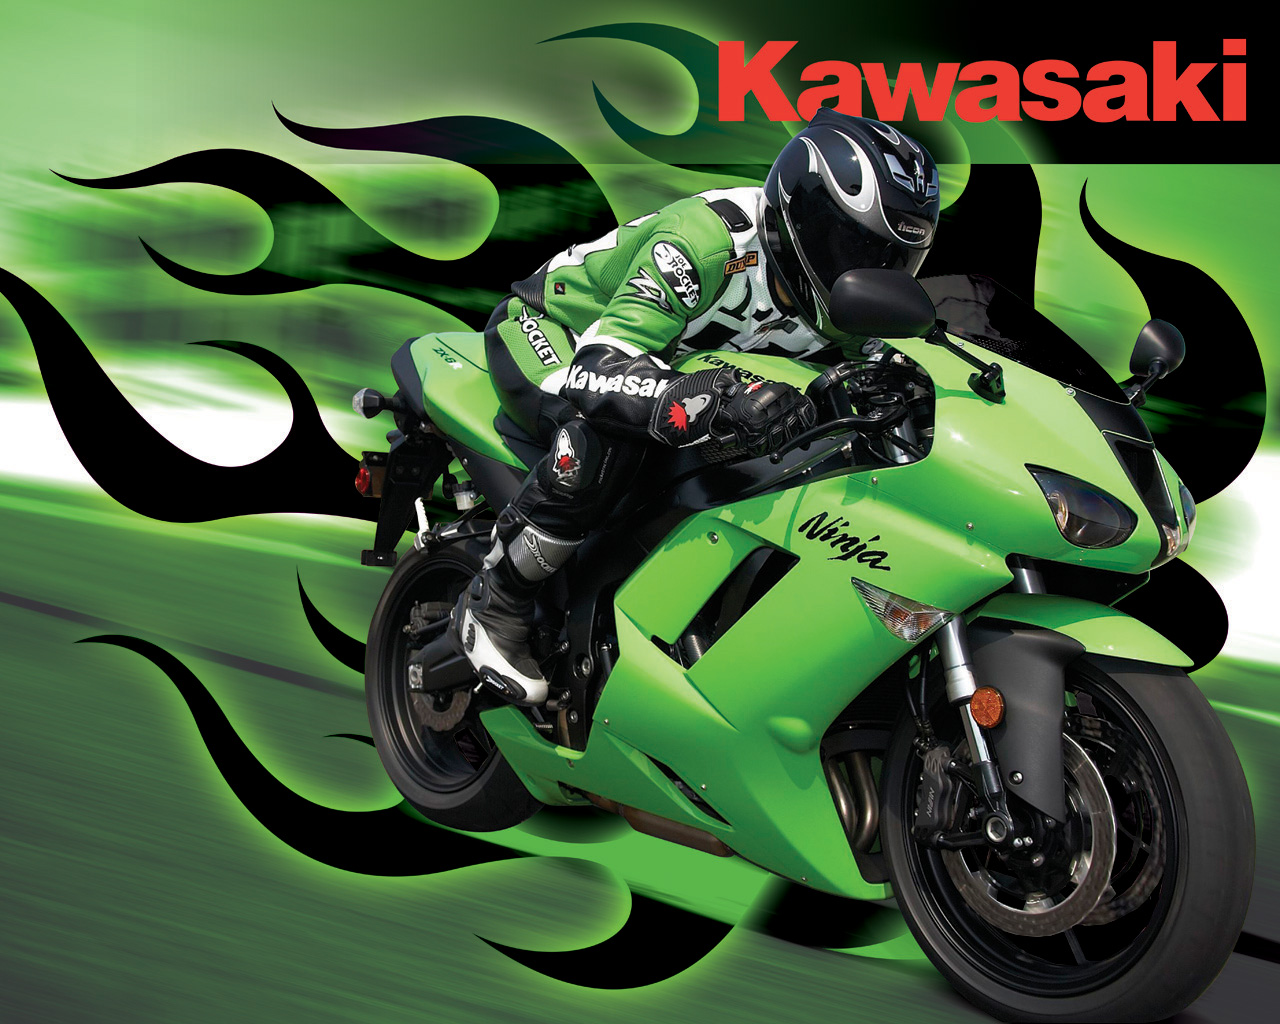 Kawasaki Ninja Wallpaper Full HD